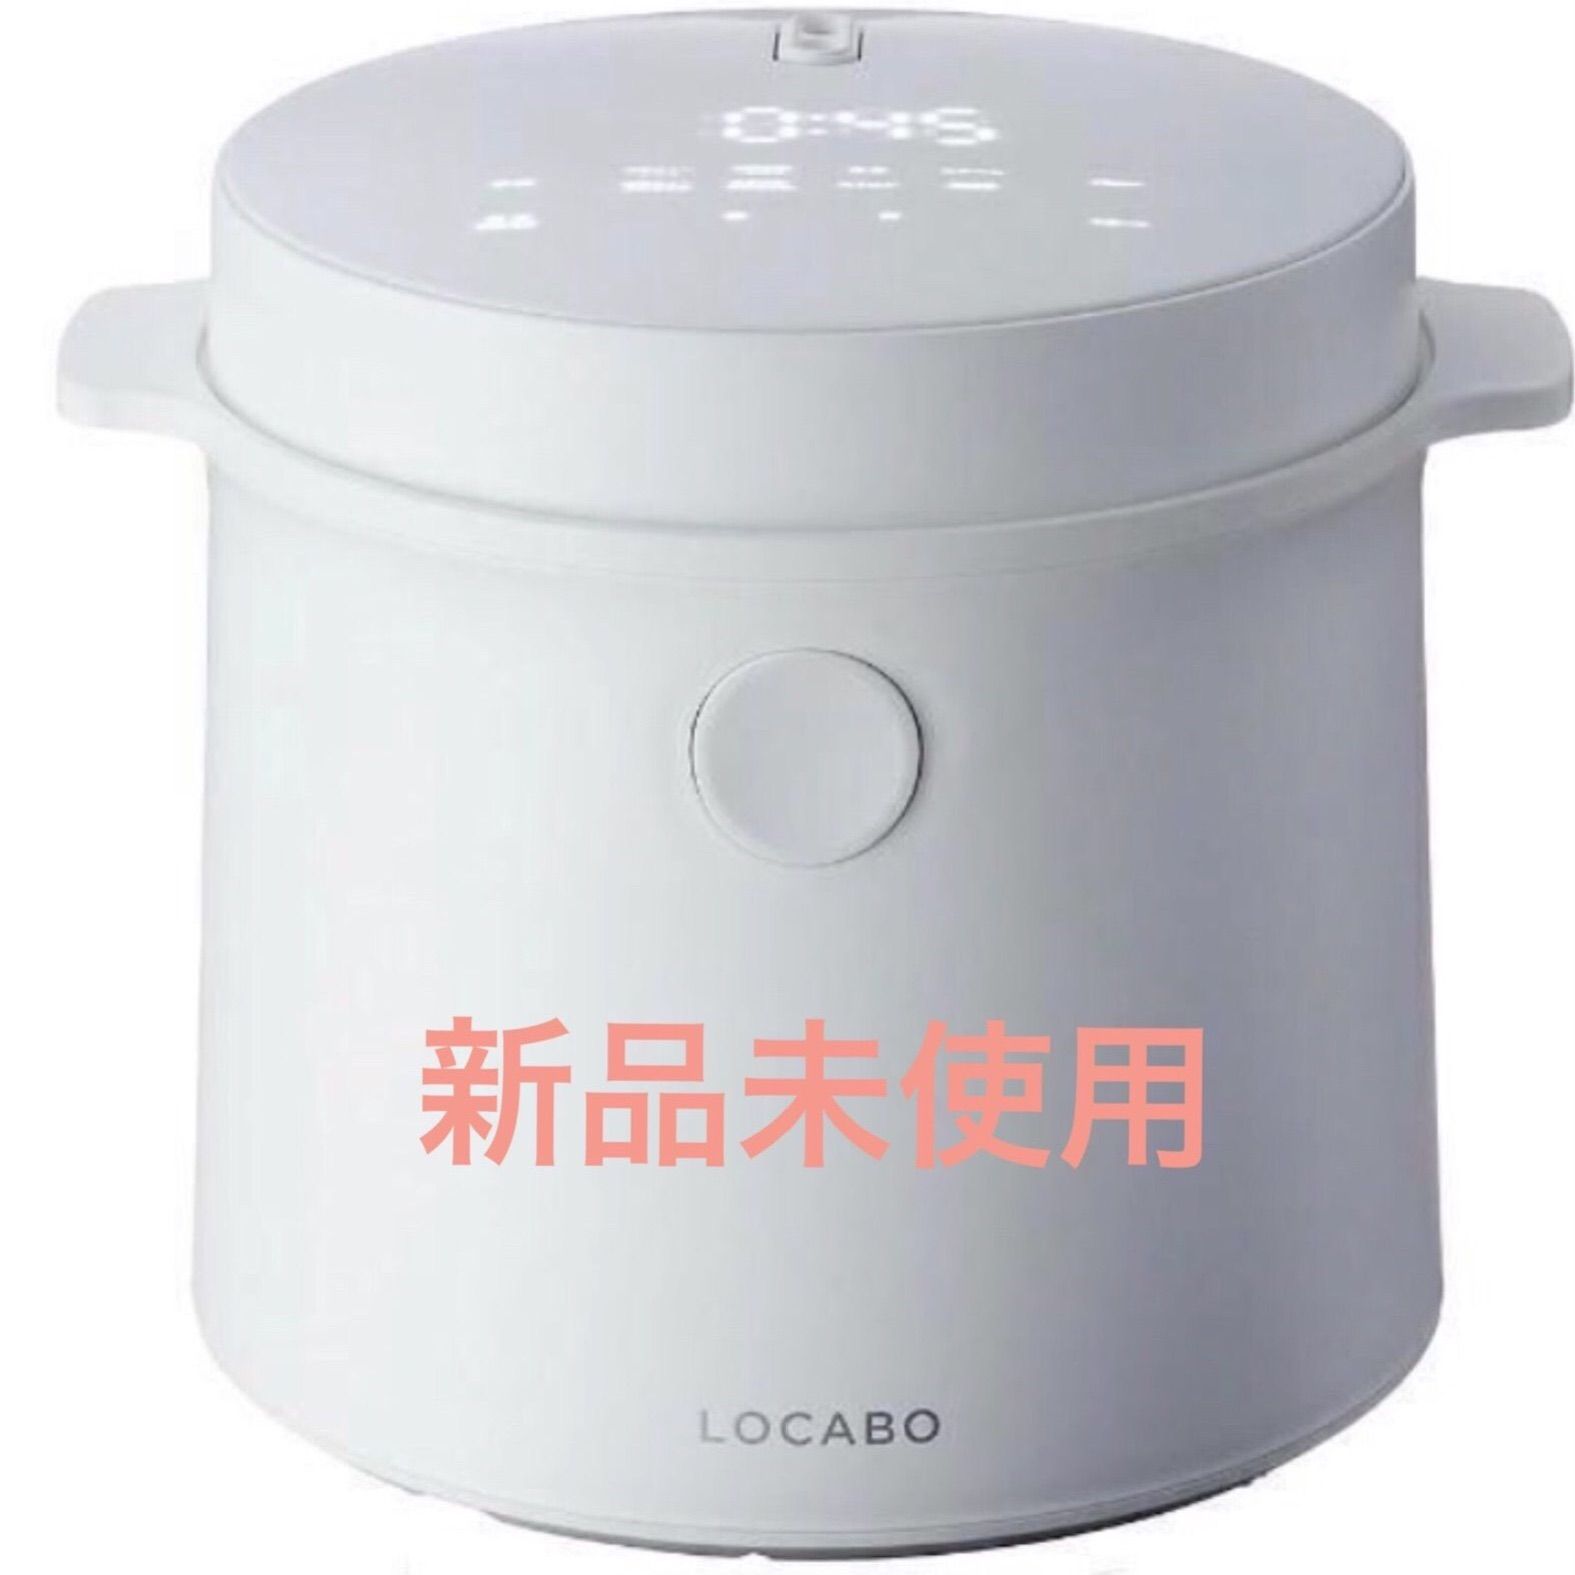 最新品得価LOCABO 糖質カット炊飯器 ホワイト JM-C20E-W 炊飯器